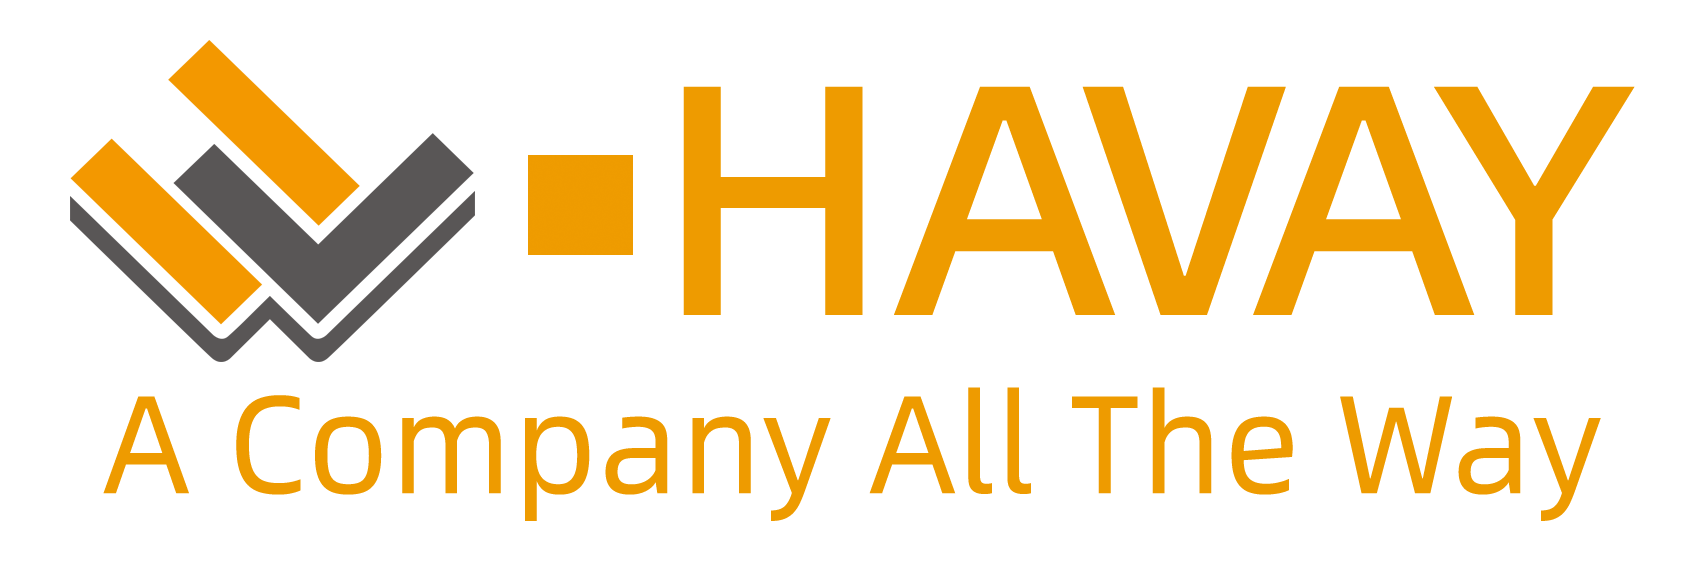 汉威logo英文